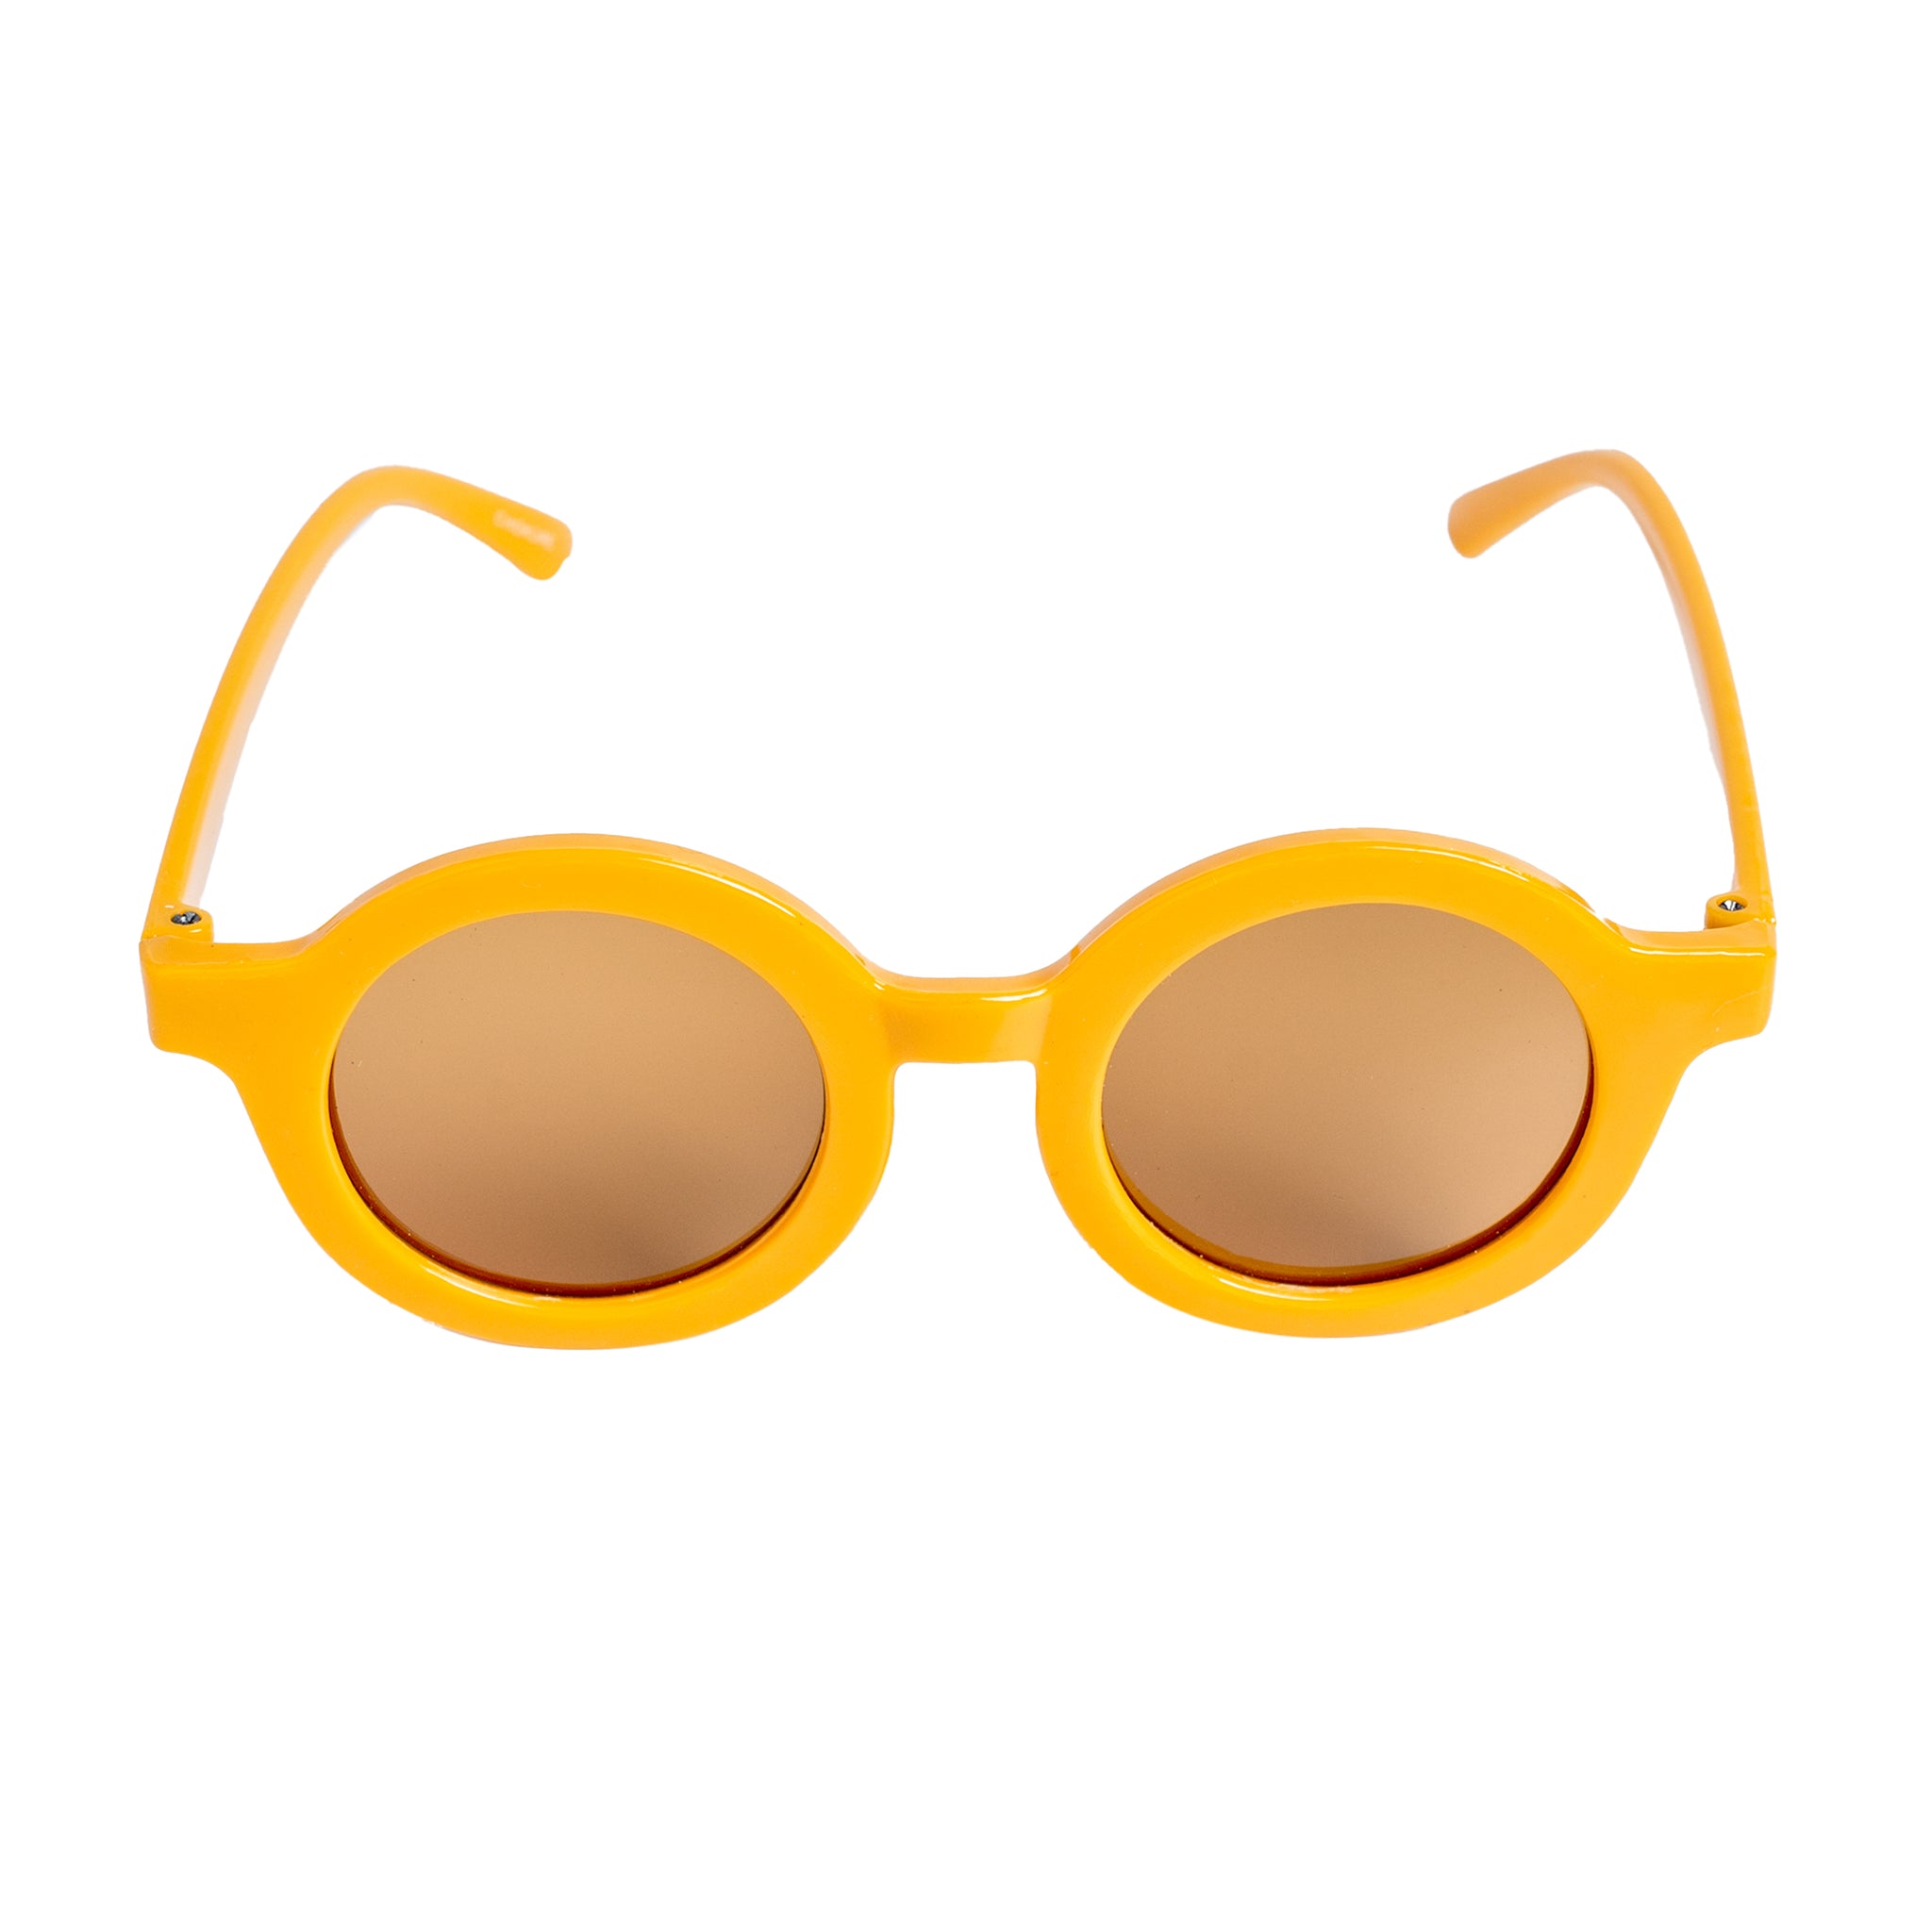 Chokore Trendy Round Sunglasses